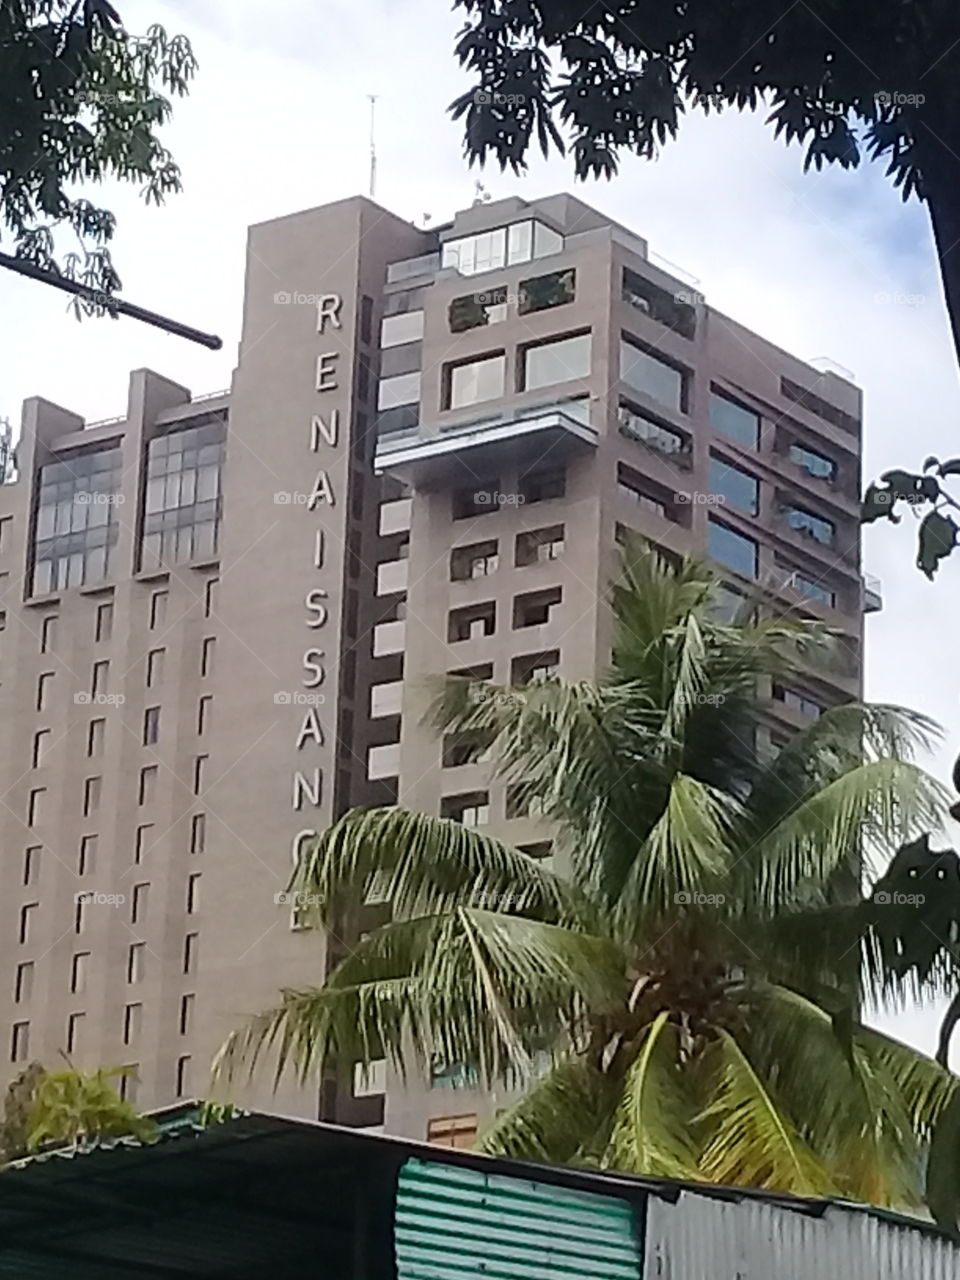 Hotel plaza